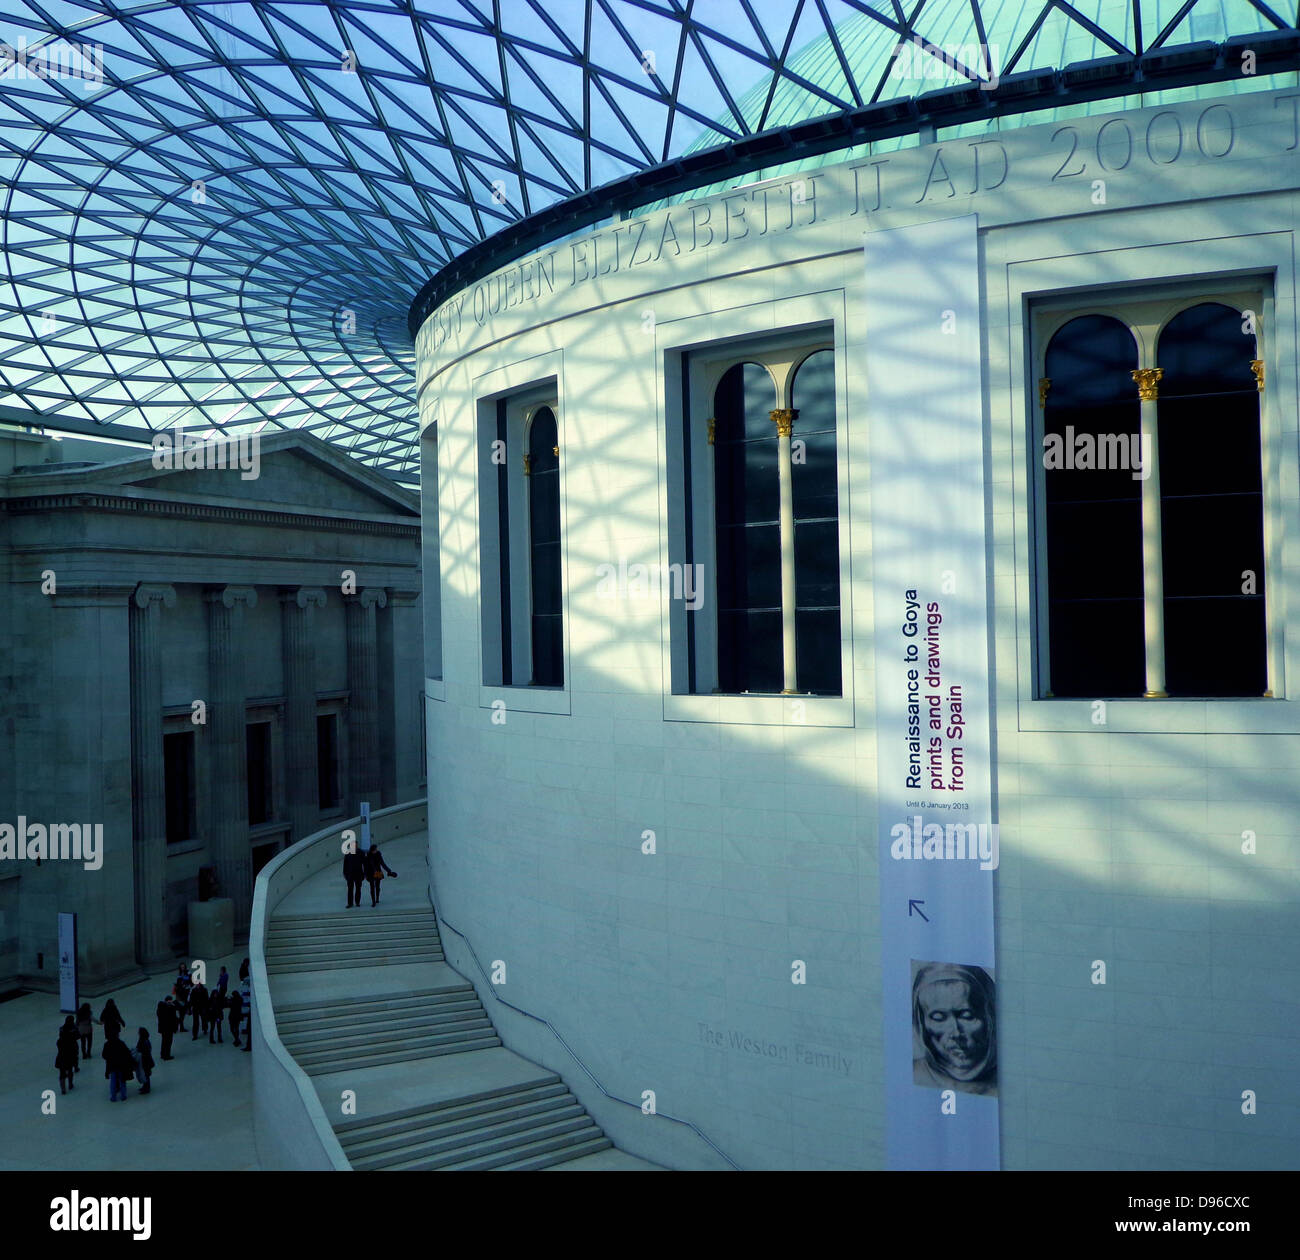 Queen Elizabeth II Great Court des British Museum, Großbritannien. Durch fördert und Partner konzipiert und im Jahr 2000 AD eröffnet. Europas größter Überdachter öffentlicher Platz. Stockfoto